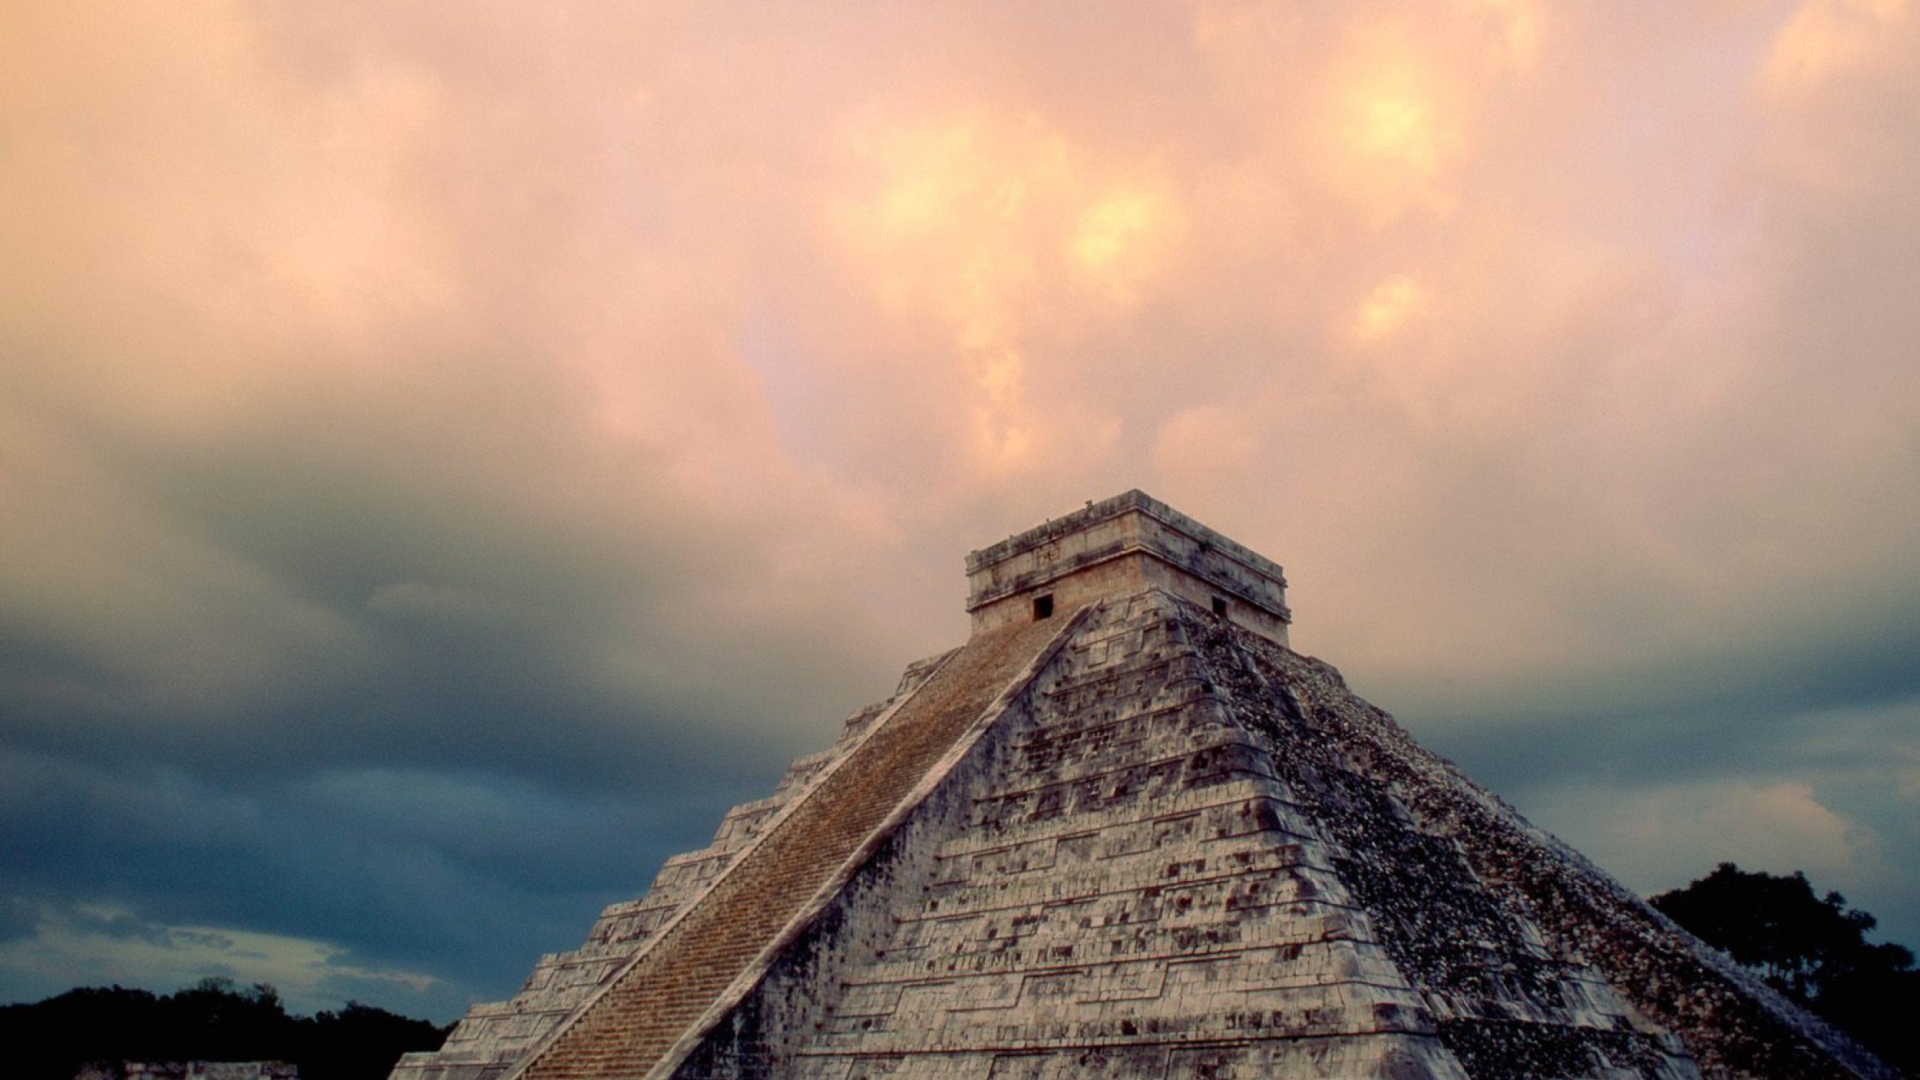 Обои Chichen Itza Yucatan Mexico - El Castillo 1920x1080